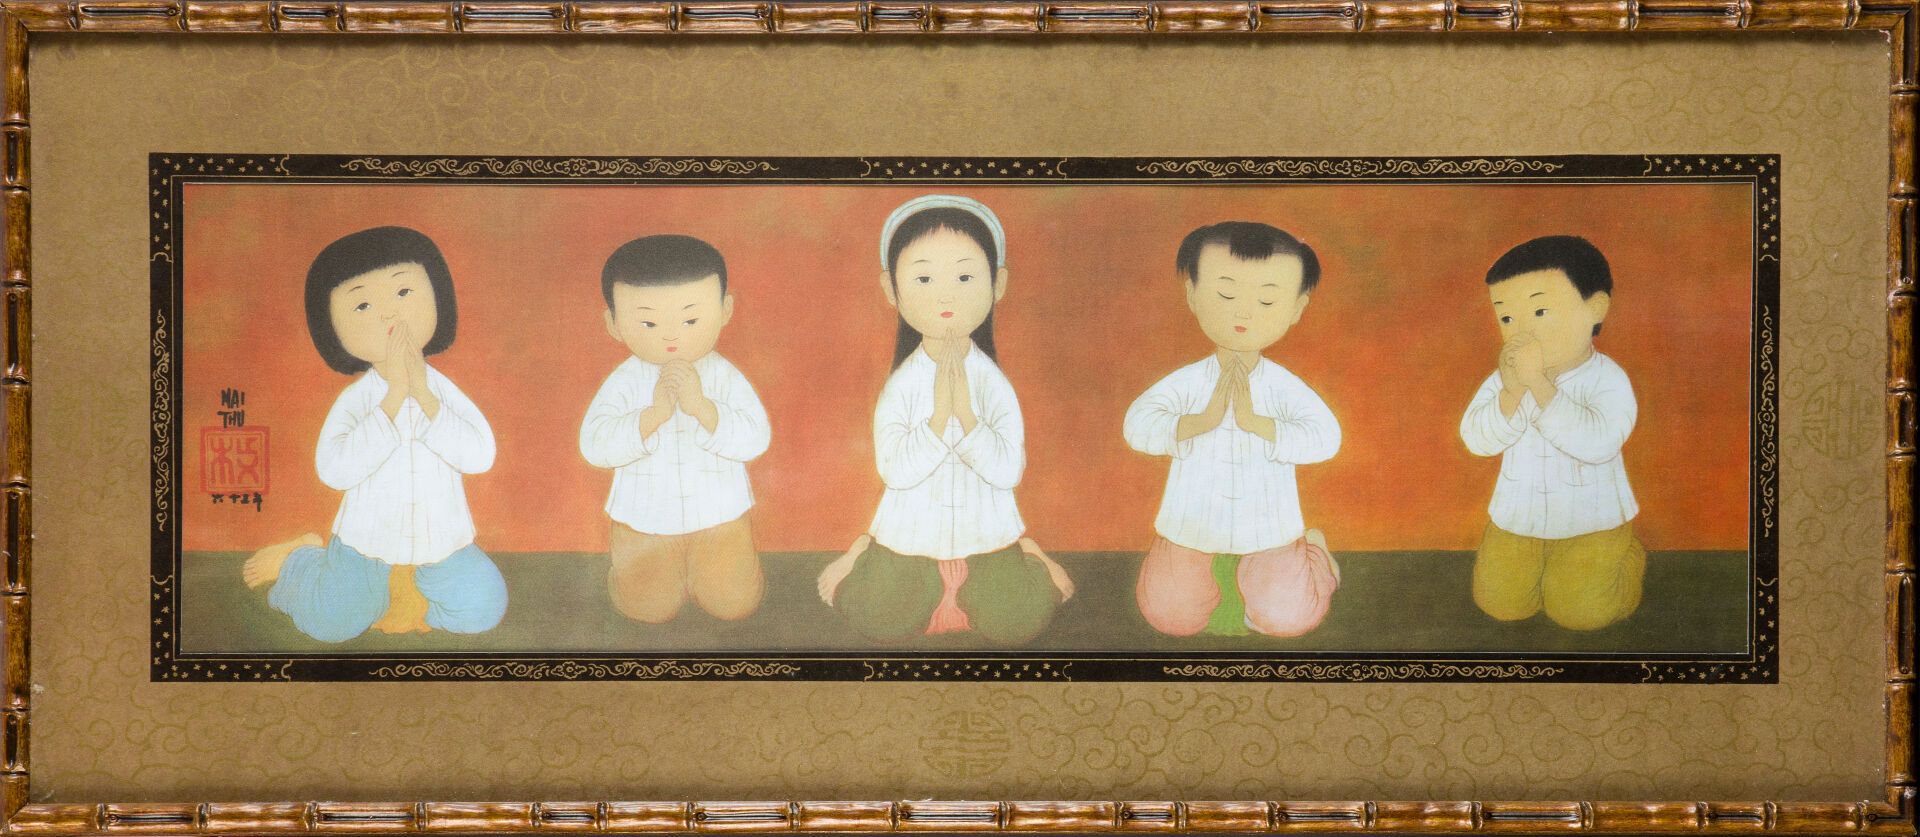 Null MAI-THU (1906-1980).
La prière des enfants.
Reproduction sur soie encadrée &hellip;